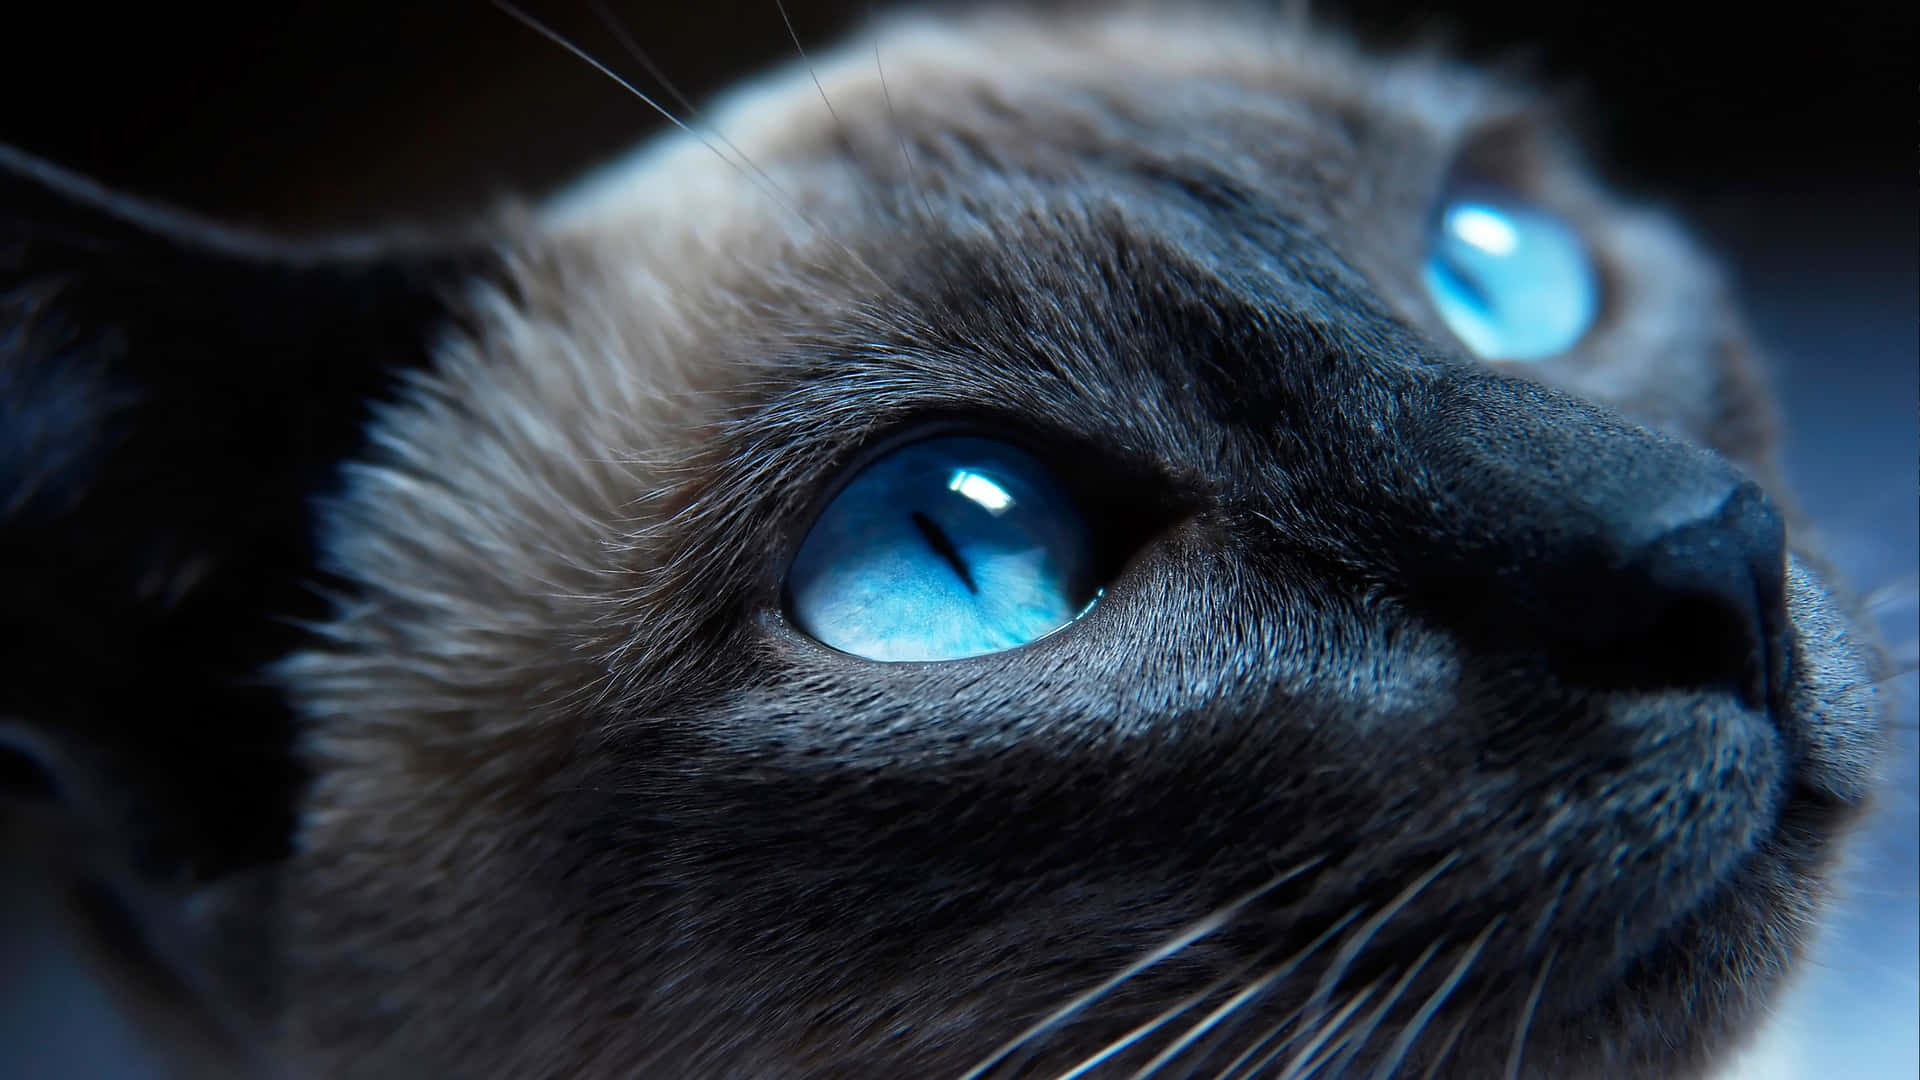 Ojosazules Brillantes De Un Gato De Cerca. Fondo de pantalla